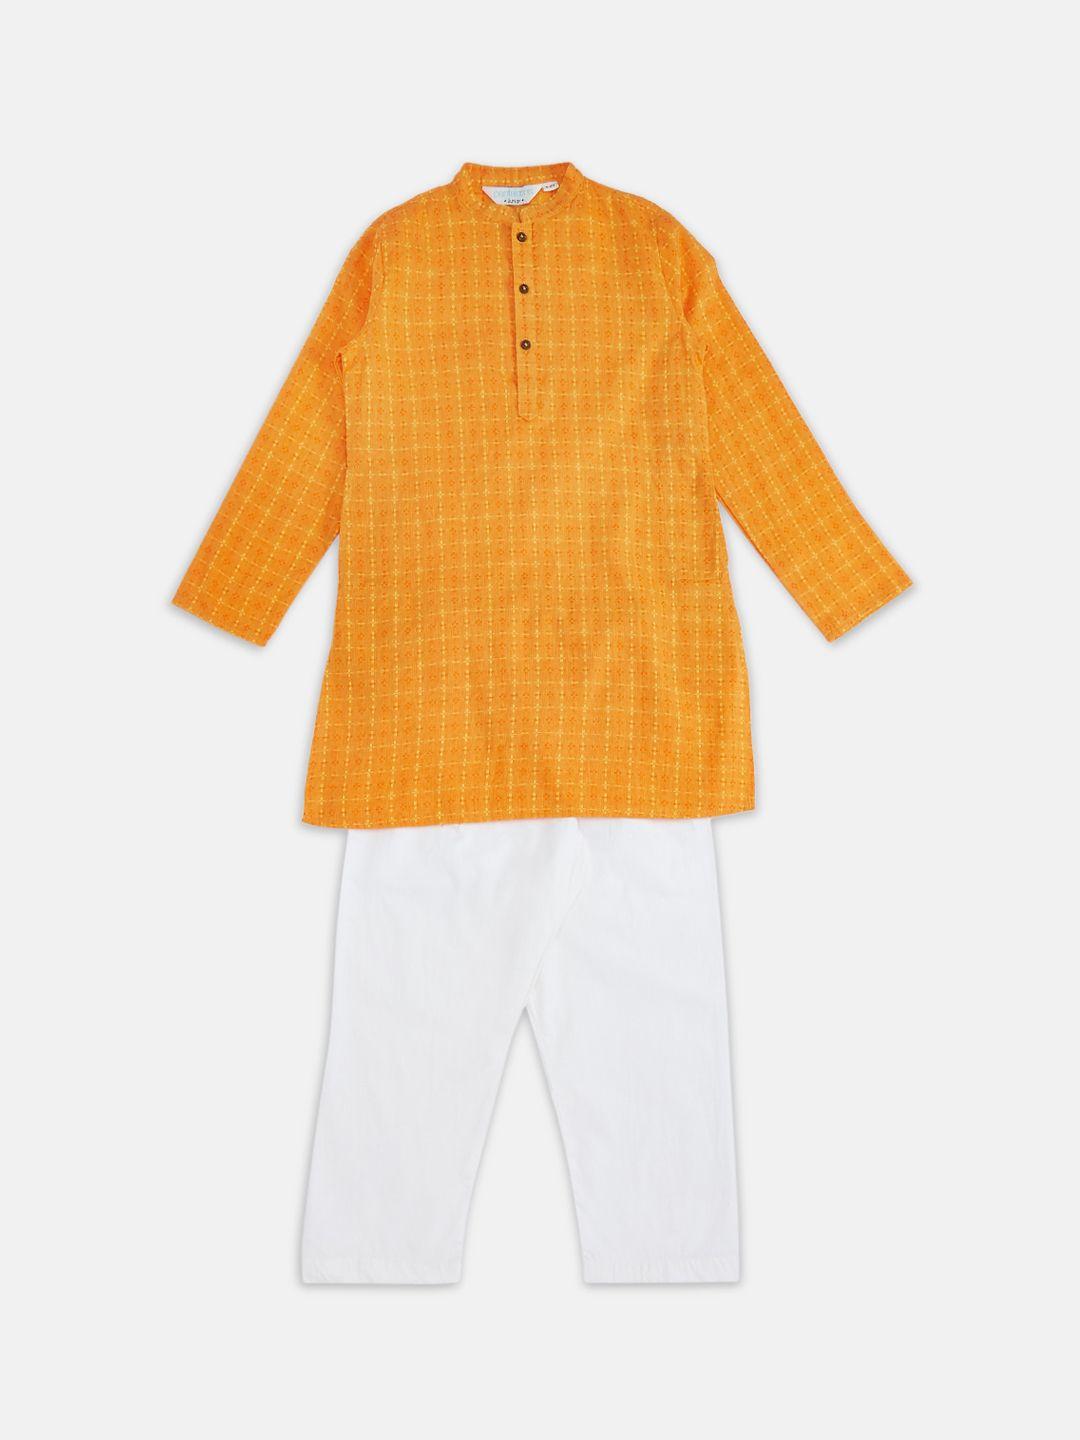 indus route by pantaloons boys mustard yellow & white pure cotton kurta with pyjamas